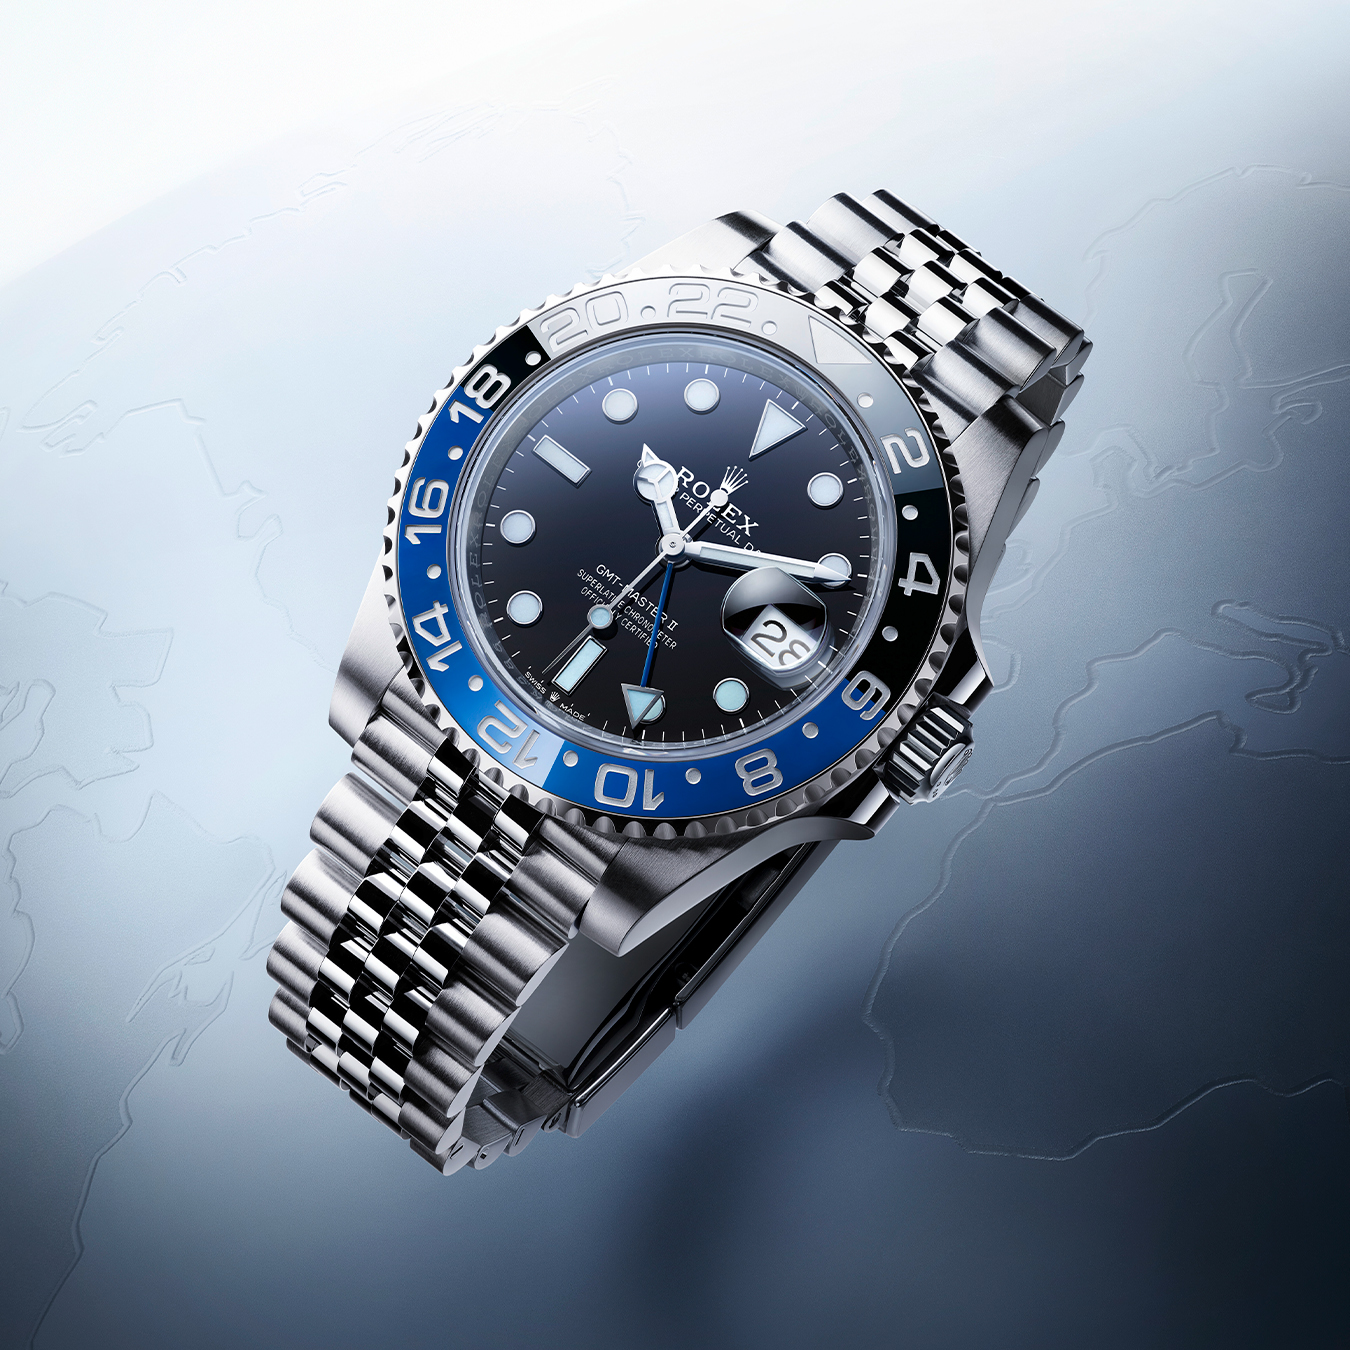 GMT Master II, modelo de la categoría de relojes profesionales Rolex